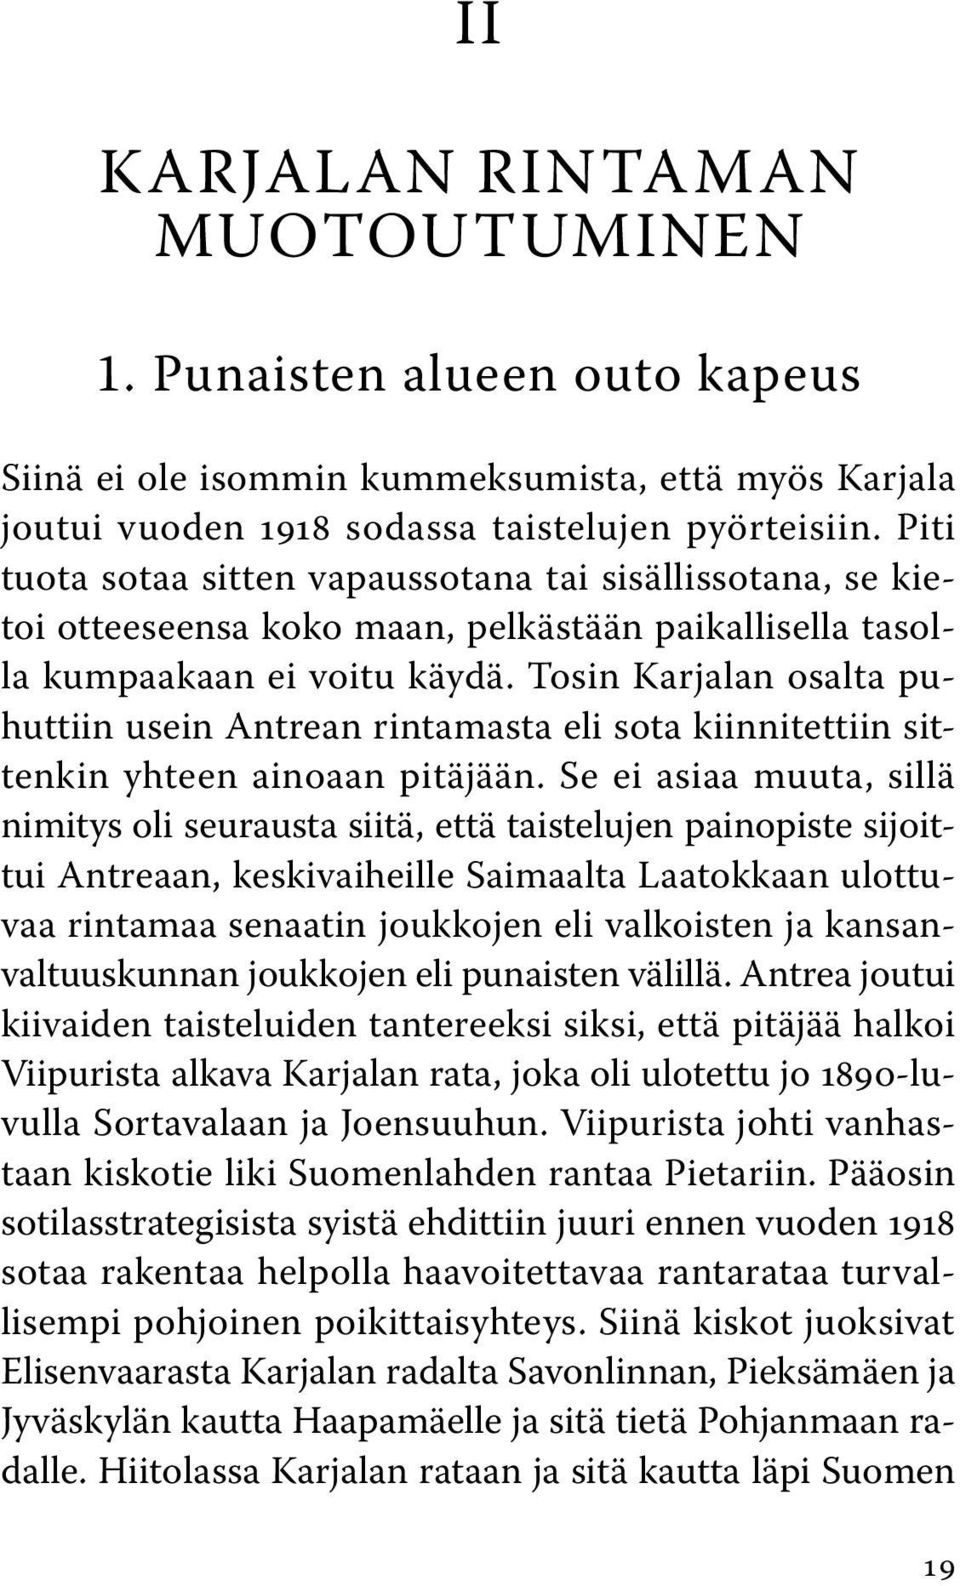 Tosin Karjalan osalta puhuttiin usein Antrean rintamasta eli sota kiinnitettiin sittenkin yhteen ainoaan pitäjään.